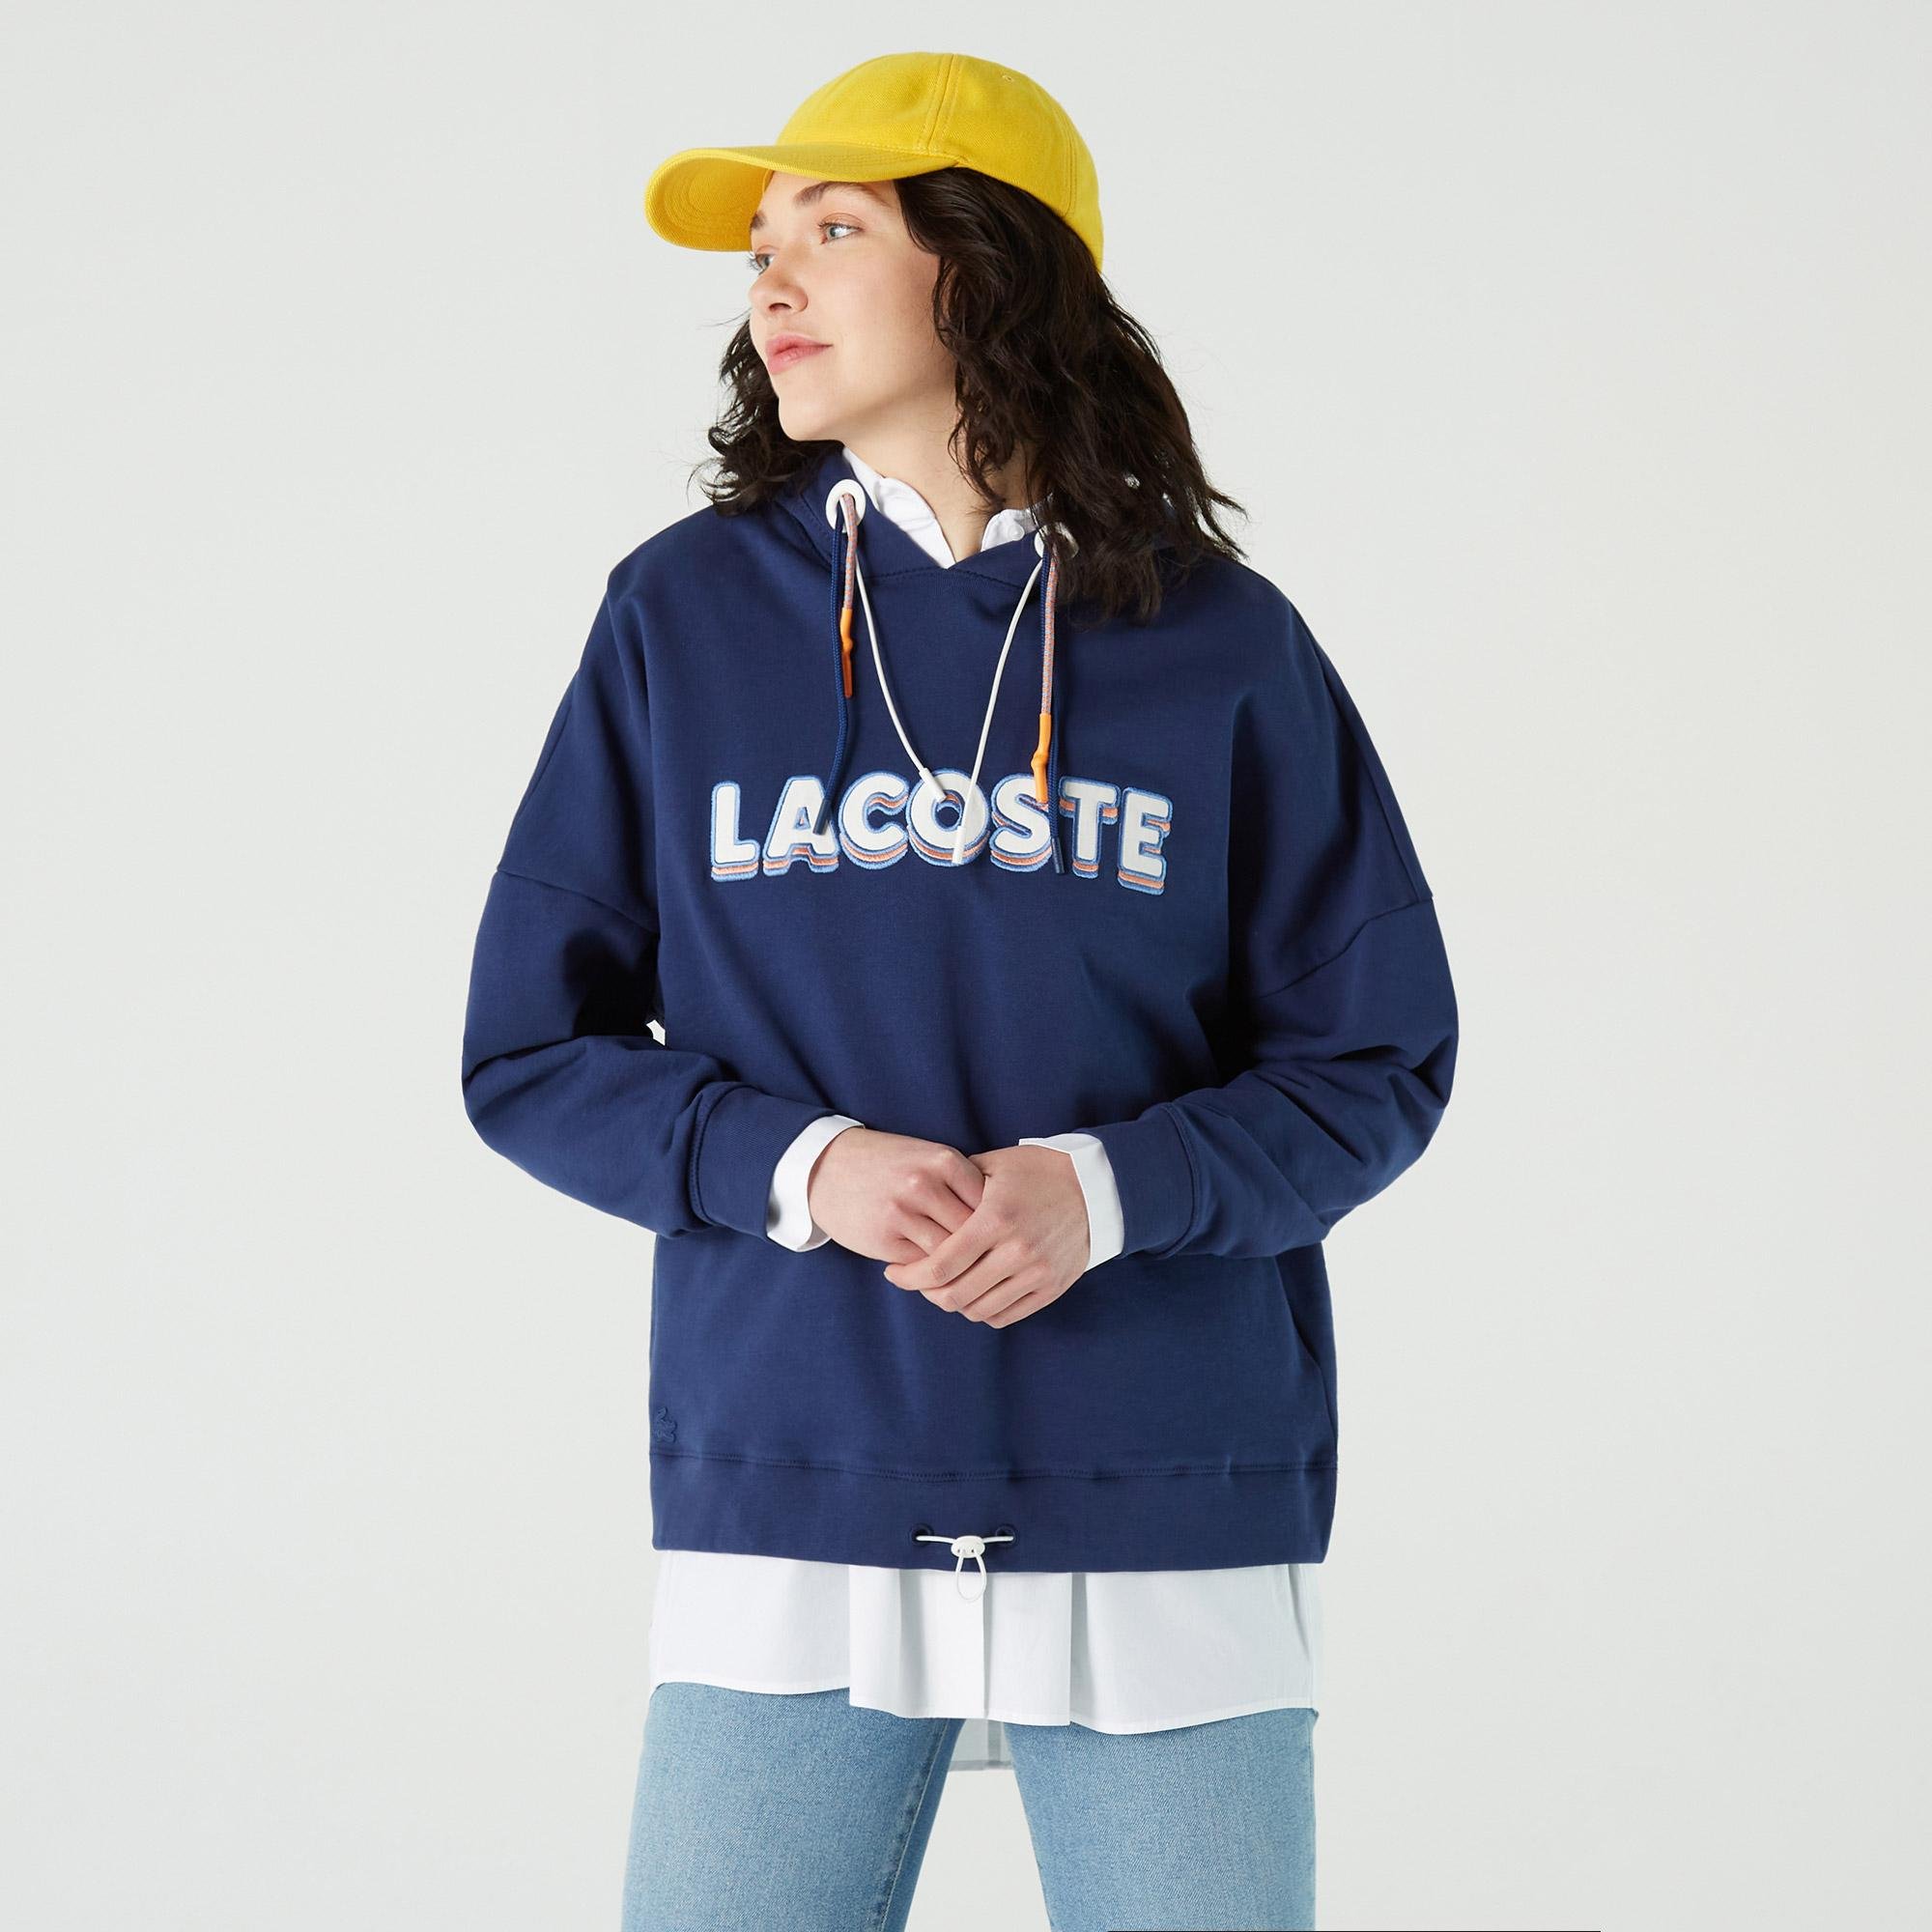 Lacoste Kadın Relaxed Fit Kapüşonlu Baskılı Lacivert Sweatshirt